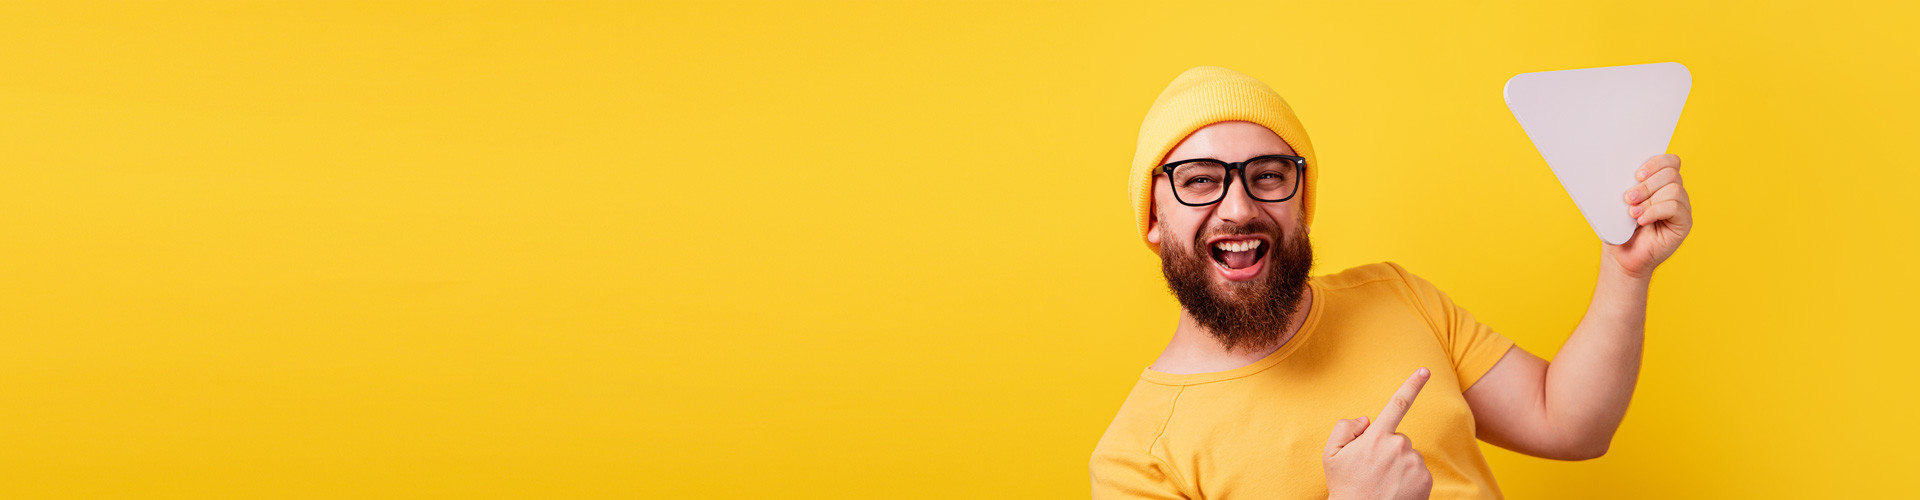 Fröhlicher lächelnder Mann, der in der Hand die Video-Play-Taste über gelbem Hintergrund hält © alesmunt, Adobe Stock